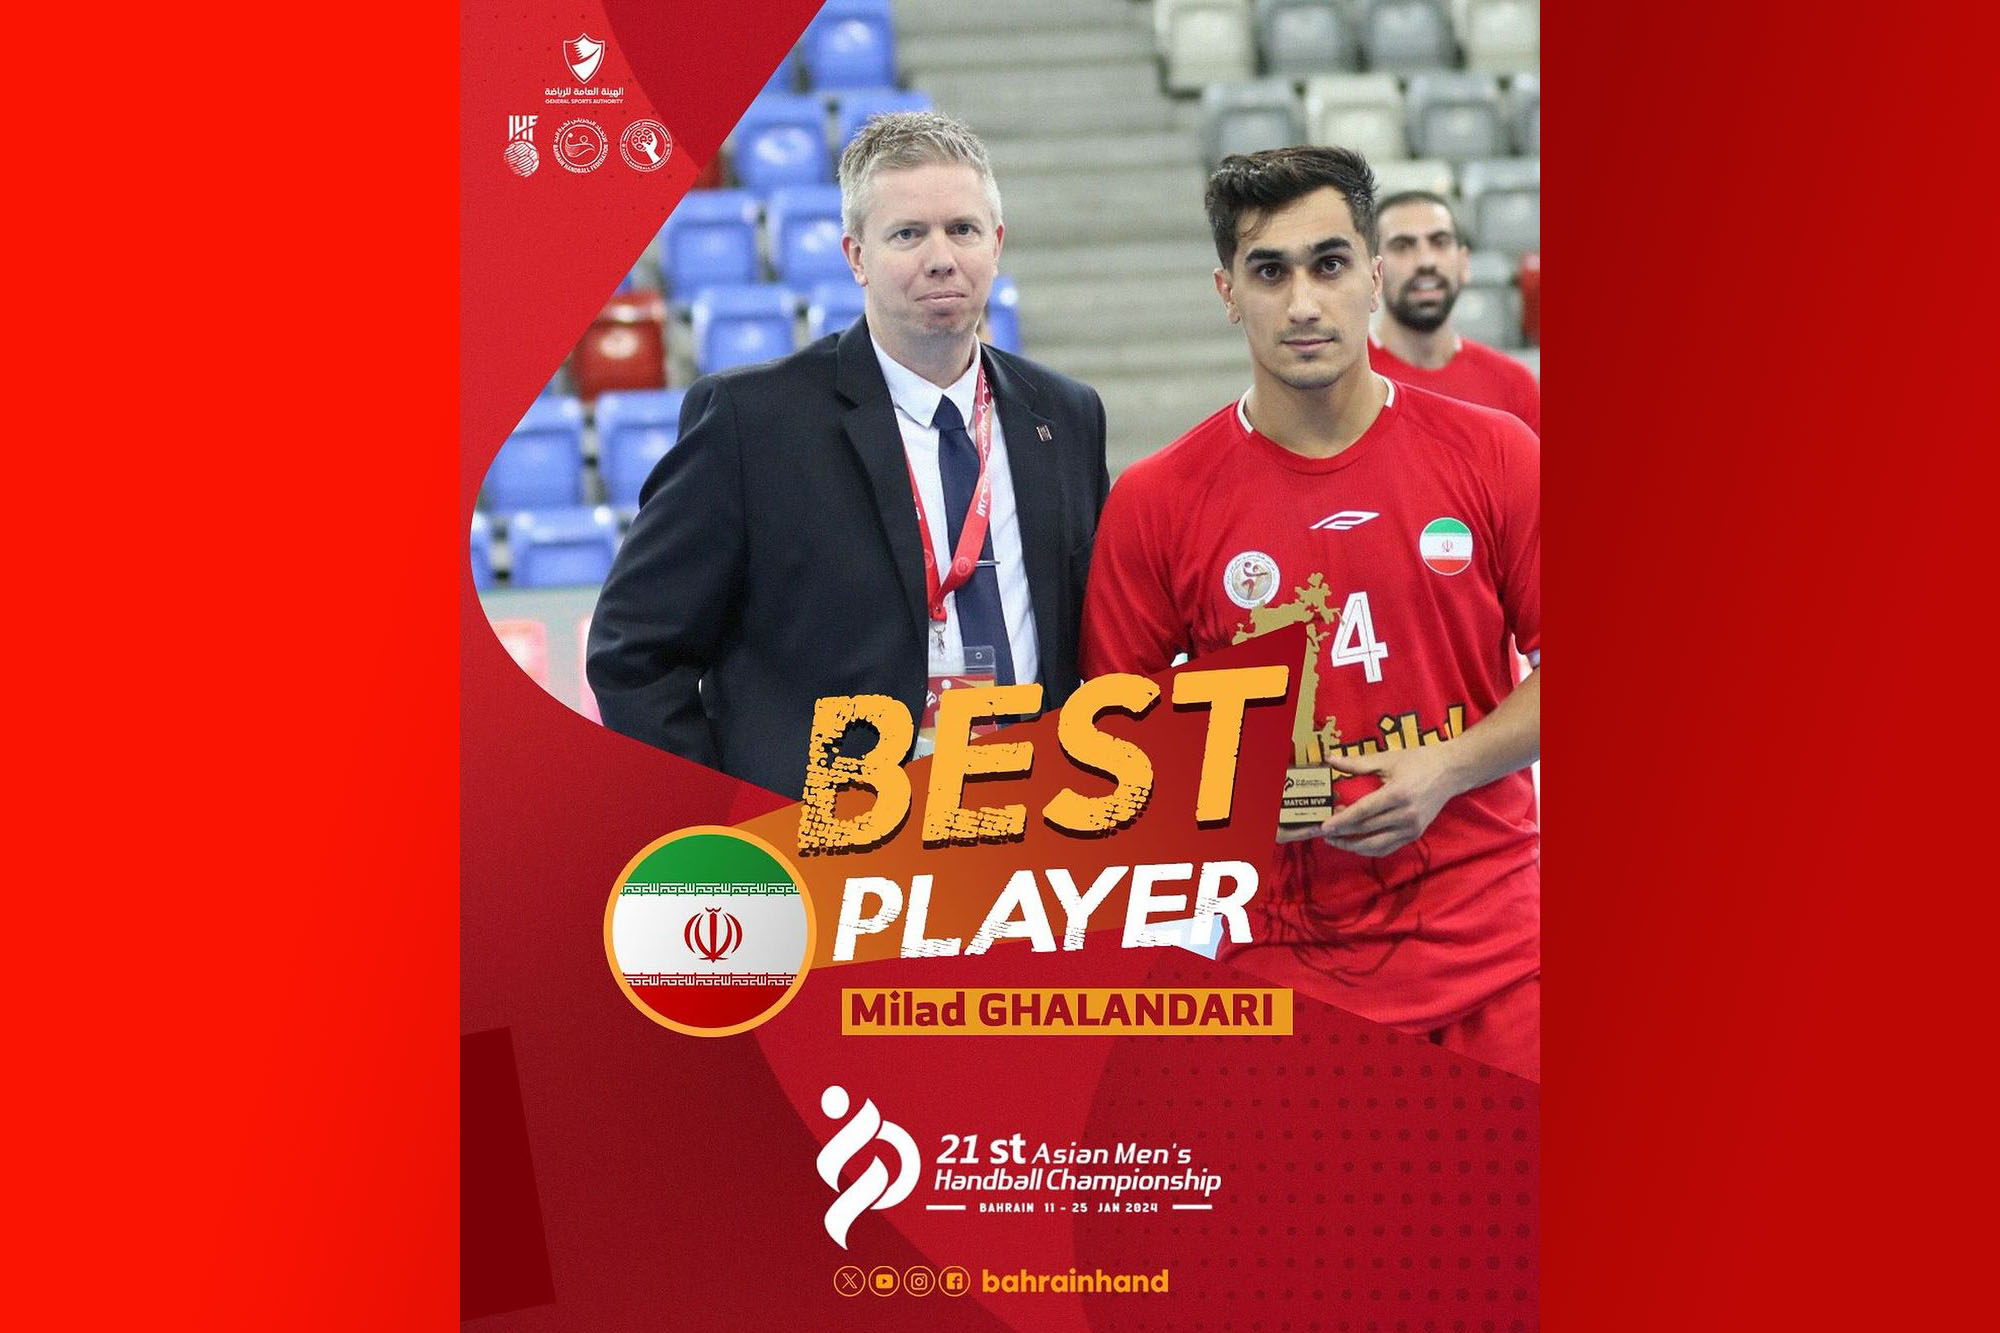 قلندری بهترین بازیکن دیدار اول ایران در قهرمانی آسیا شد